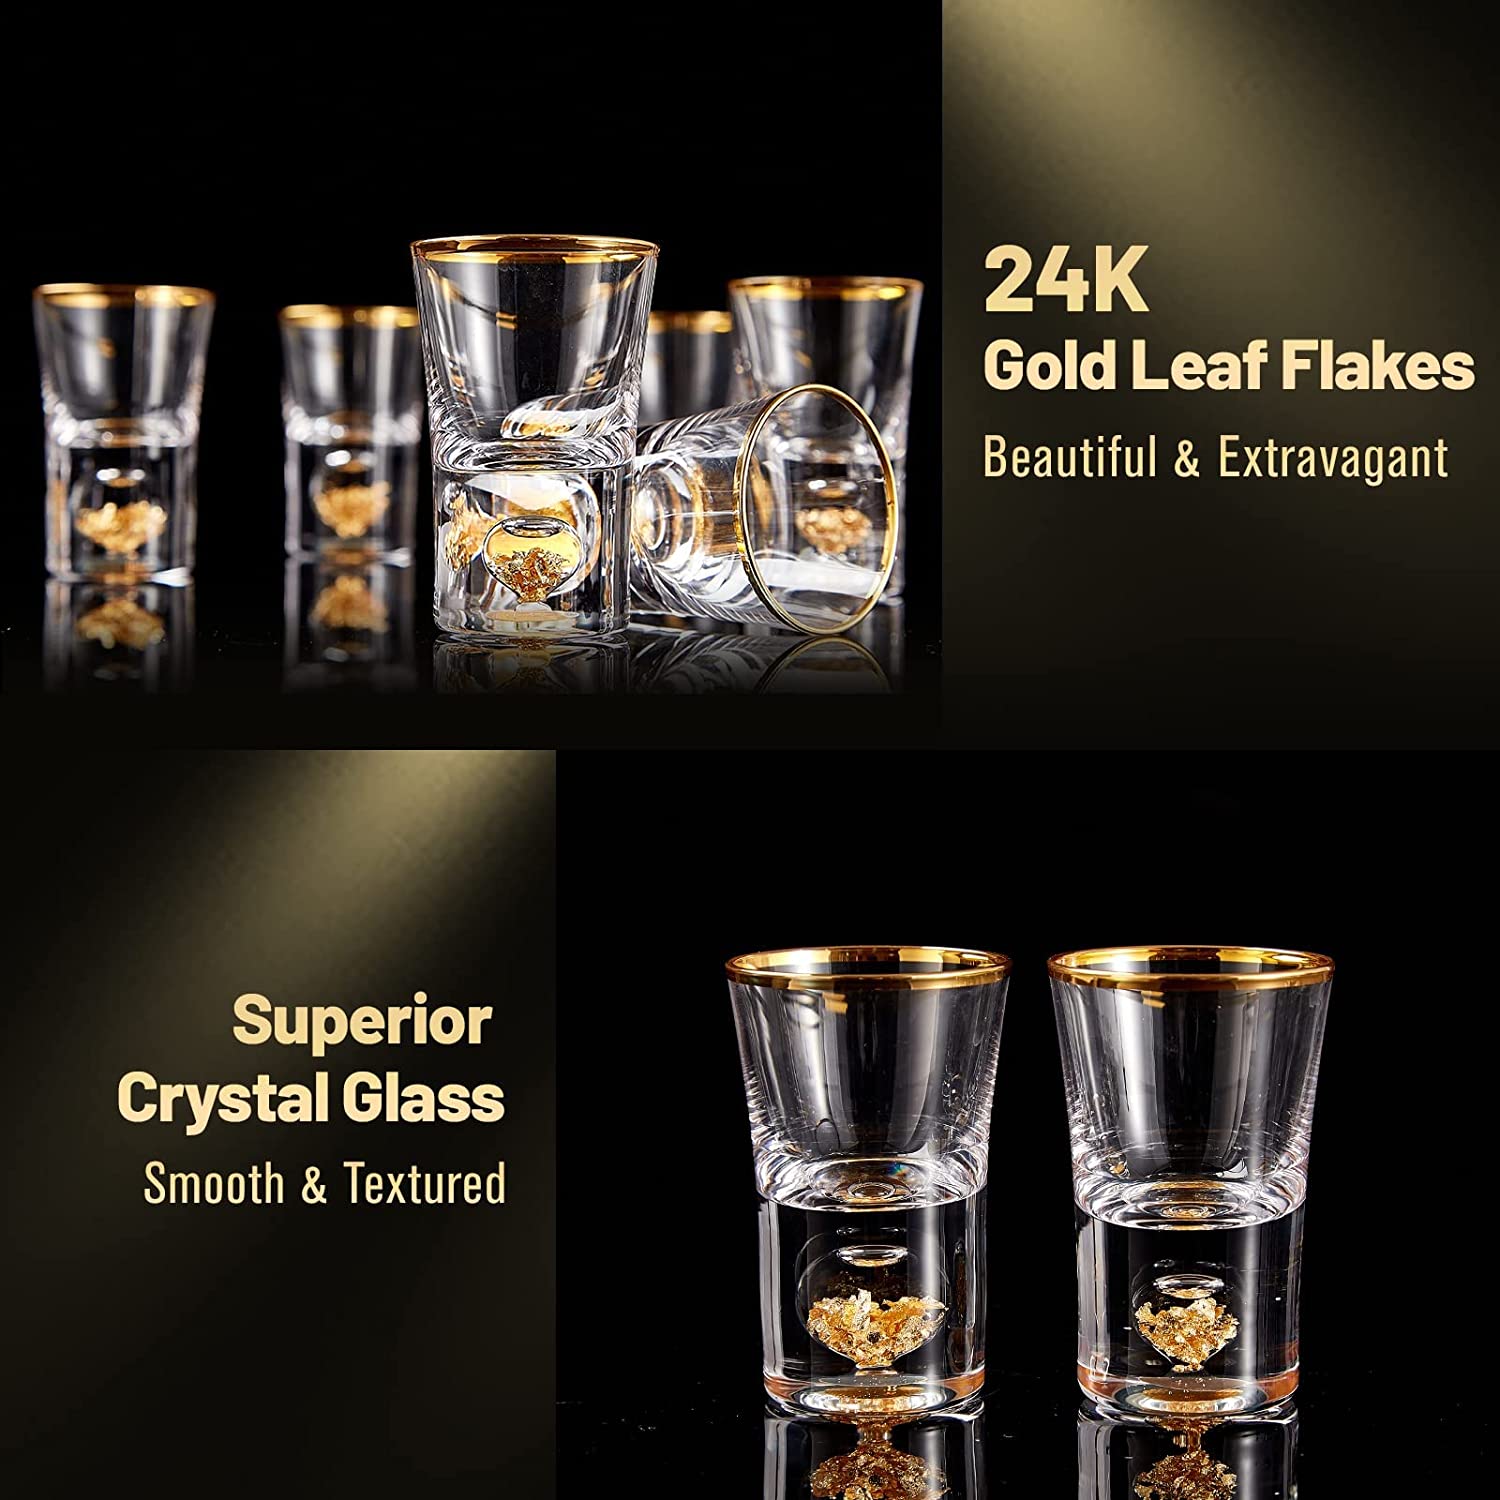 Gold Rim Triangular Shot Glasses, Set of 12